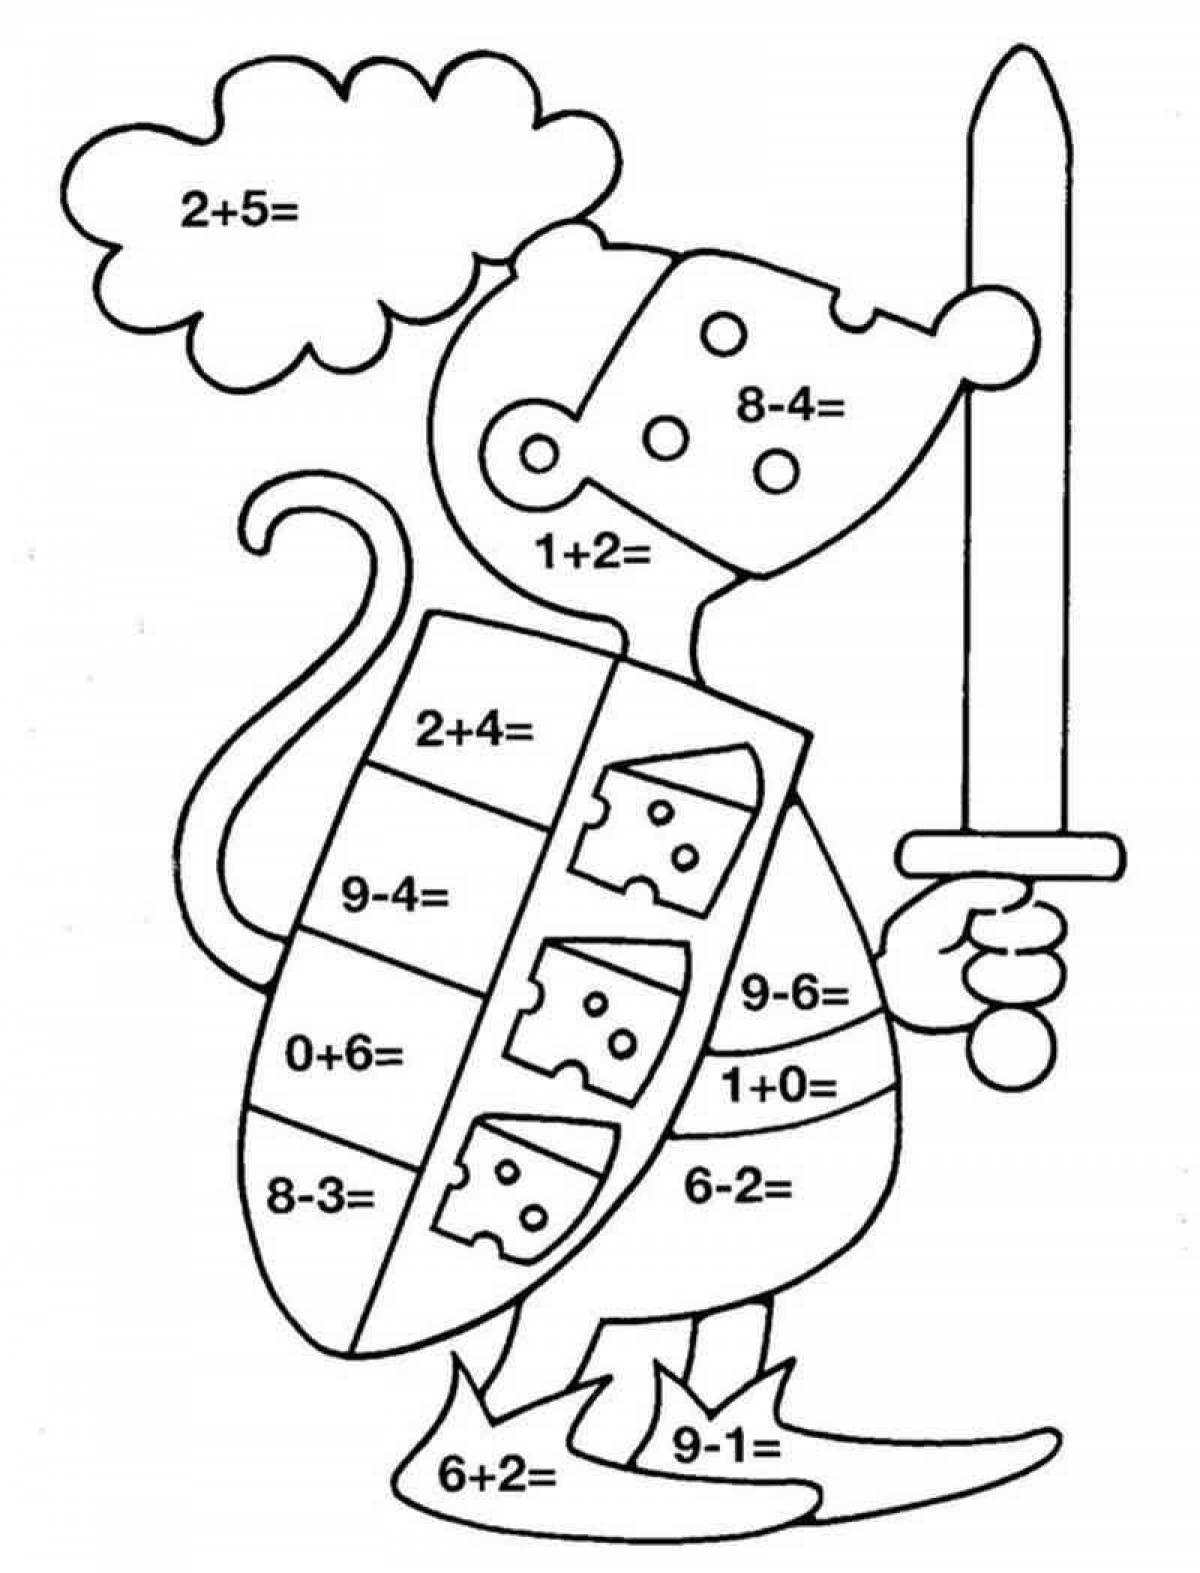 Развлекательная раскраска по номерам для детей 7 лет с примерами арифметики